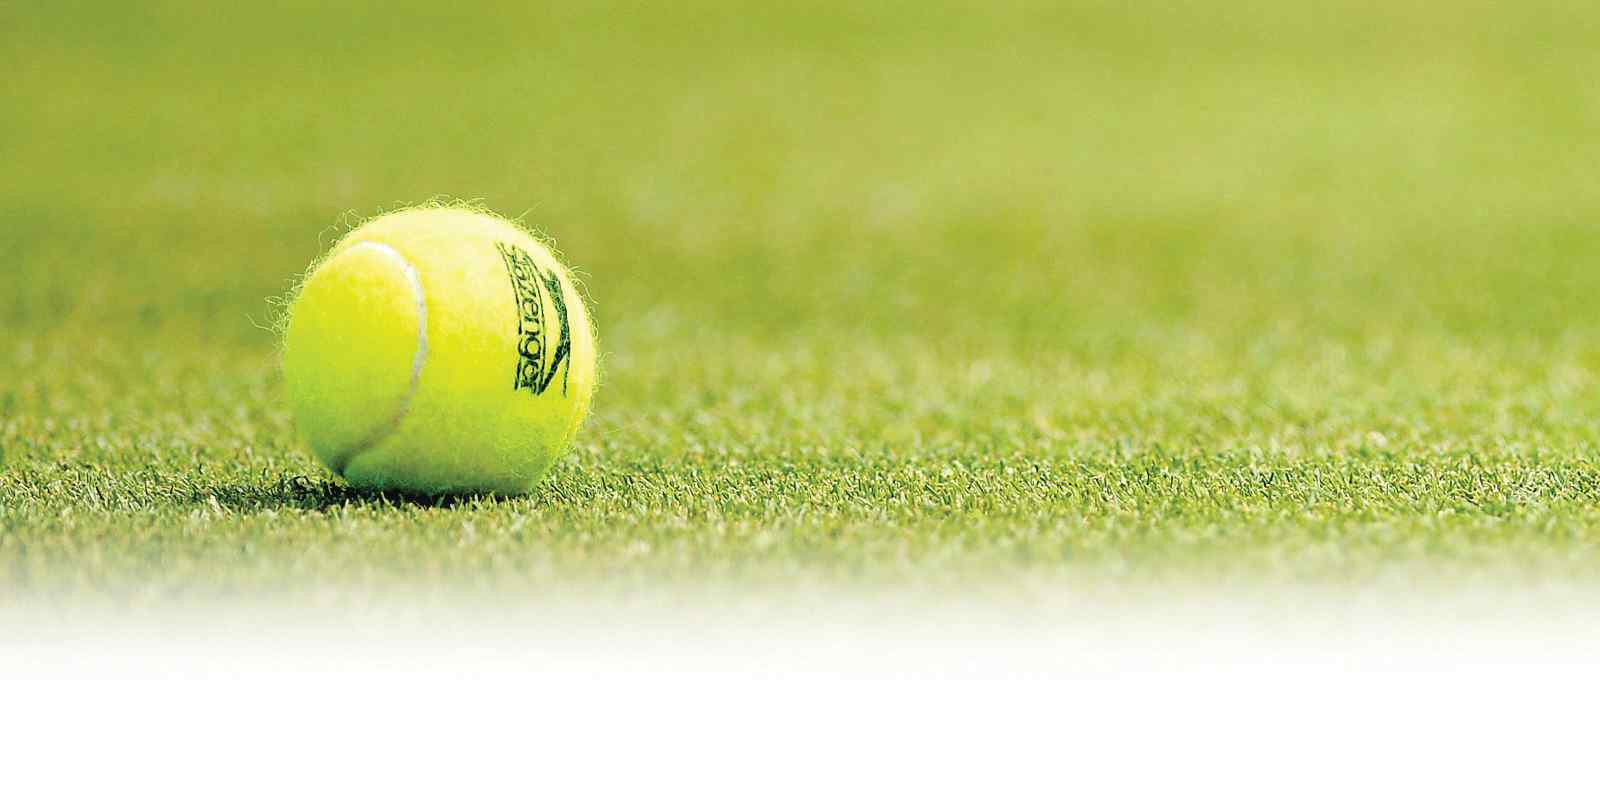 Tennis à Maurice: Début de saison avec le LUX* Grand Gaube Tennis Open 2016